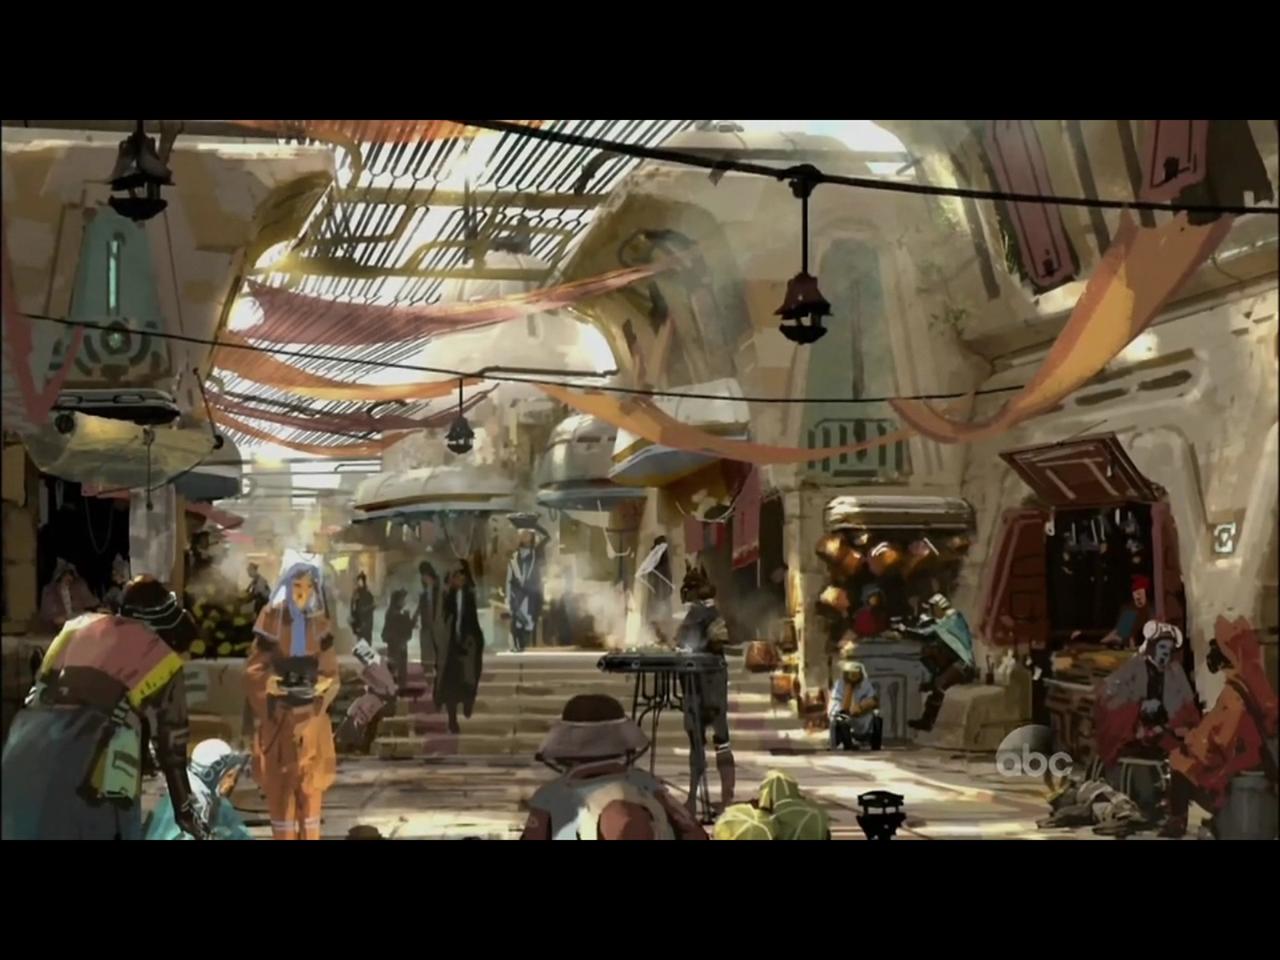 Star Wars land breaking ground in Disney World and Disneyland next month